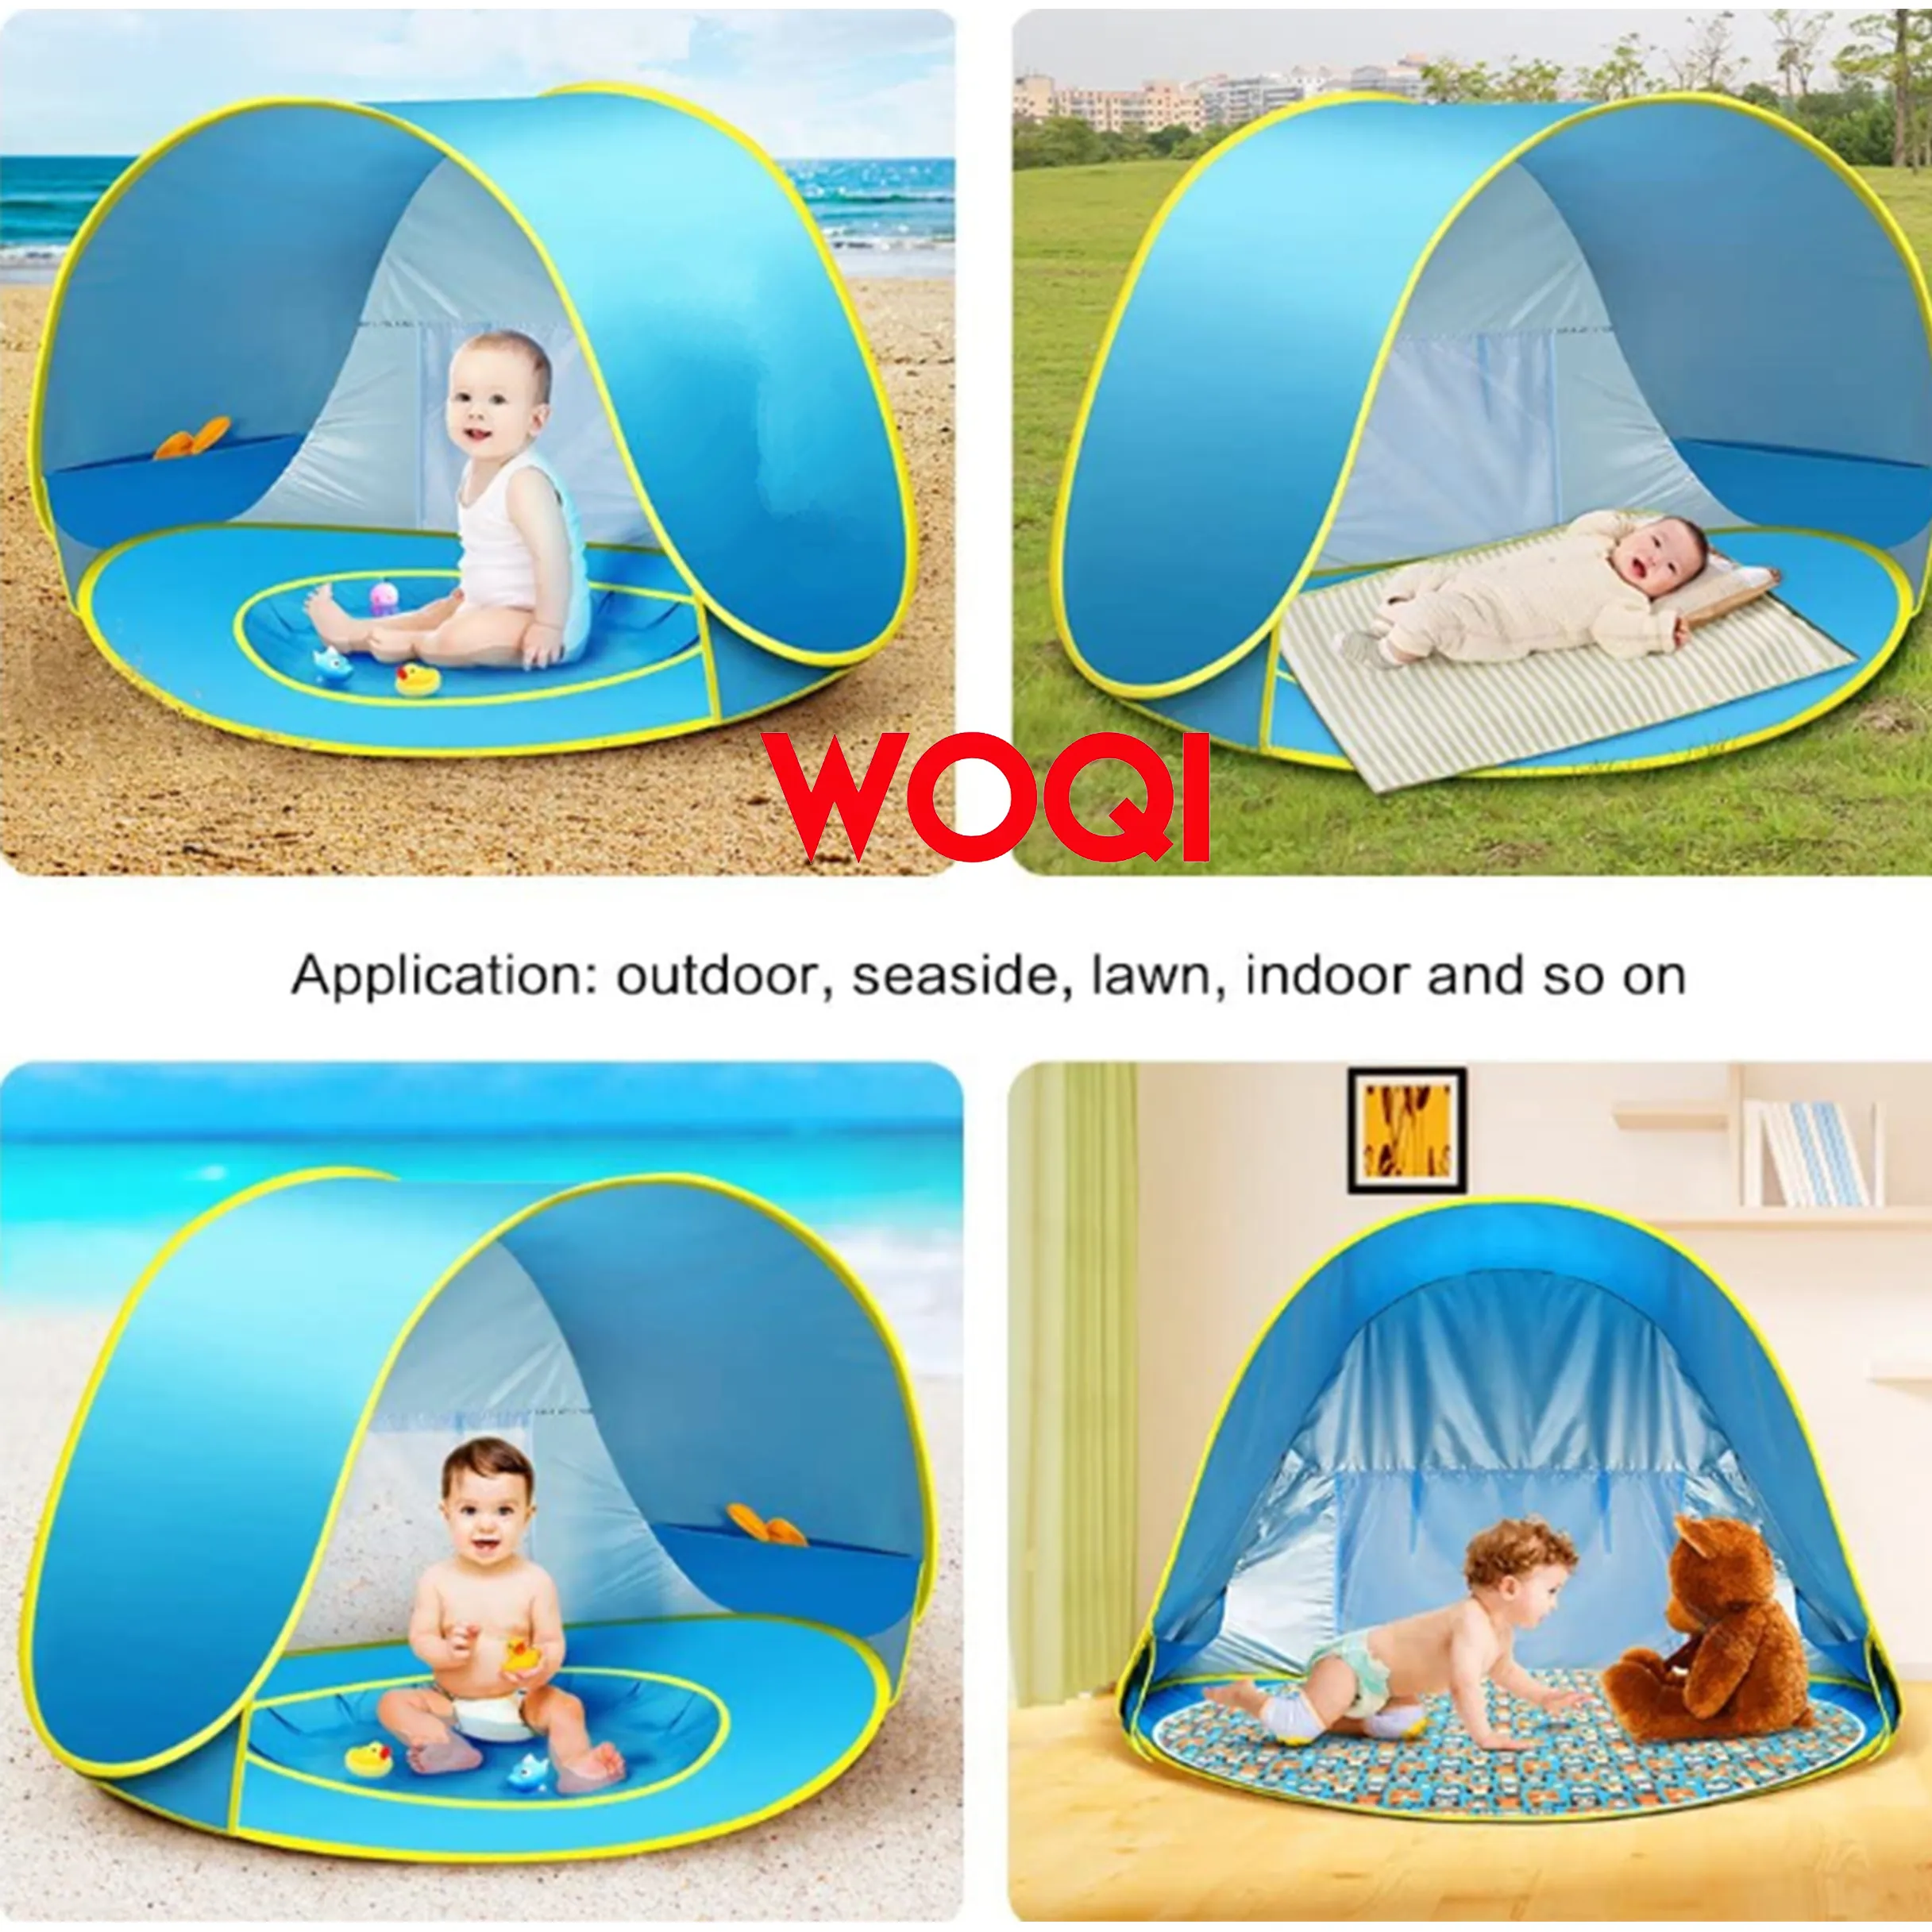 Woqi pop up barraca de praia de acampamento ao ar livre pop up Instantânea barraca de praia Automático tenda almofada inflável para as crianças